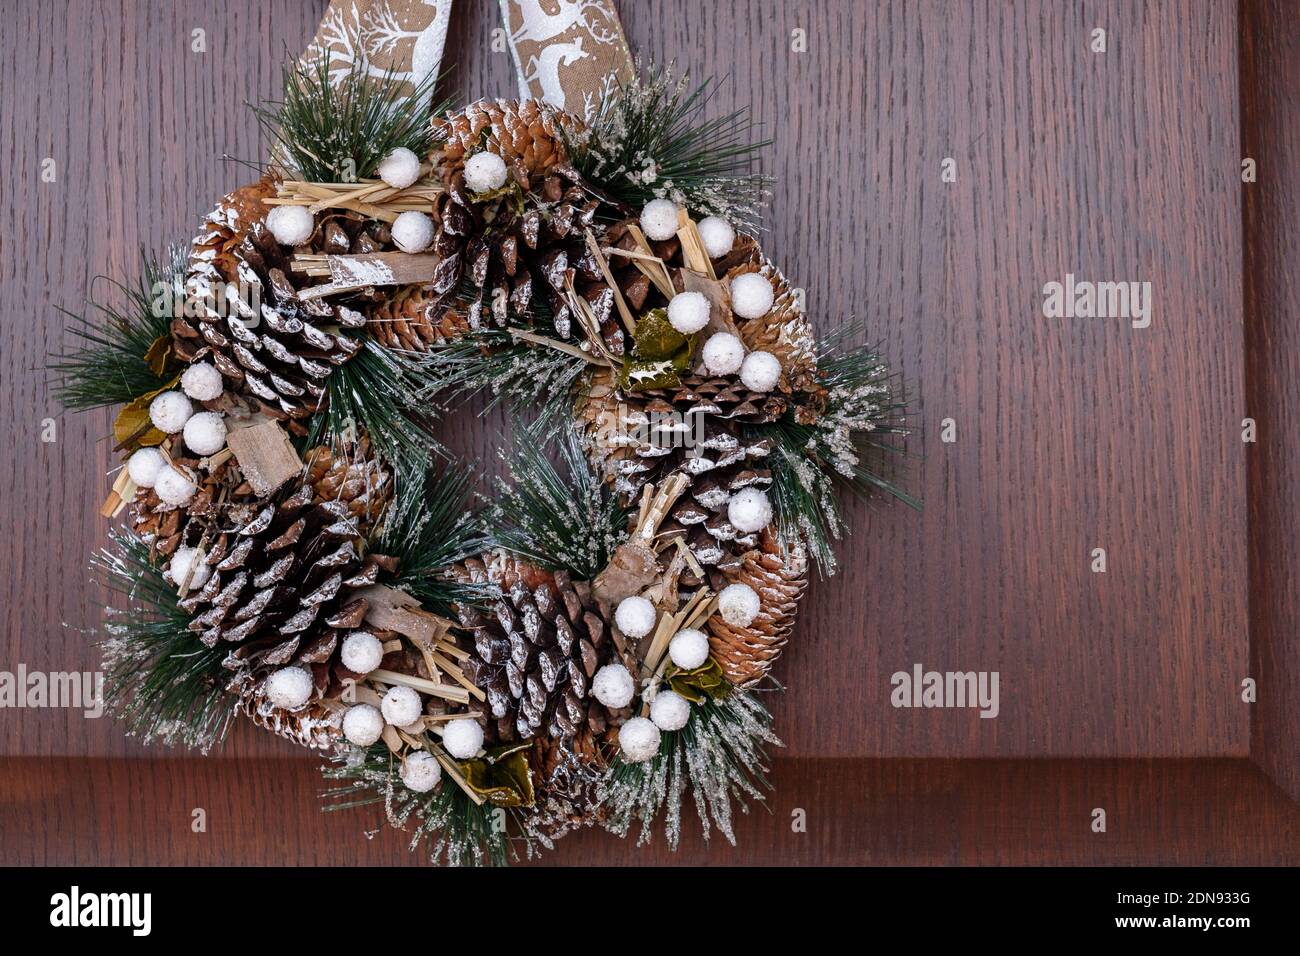 December 2020 - Milan: Christmas wreath hanging on a wooden door Stock Photo